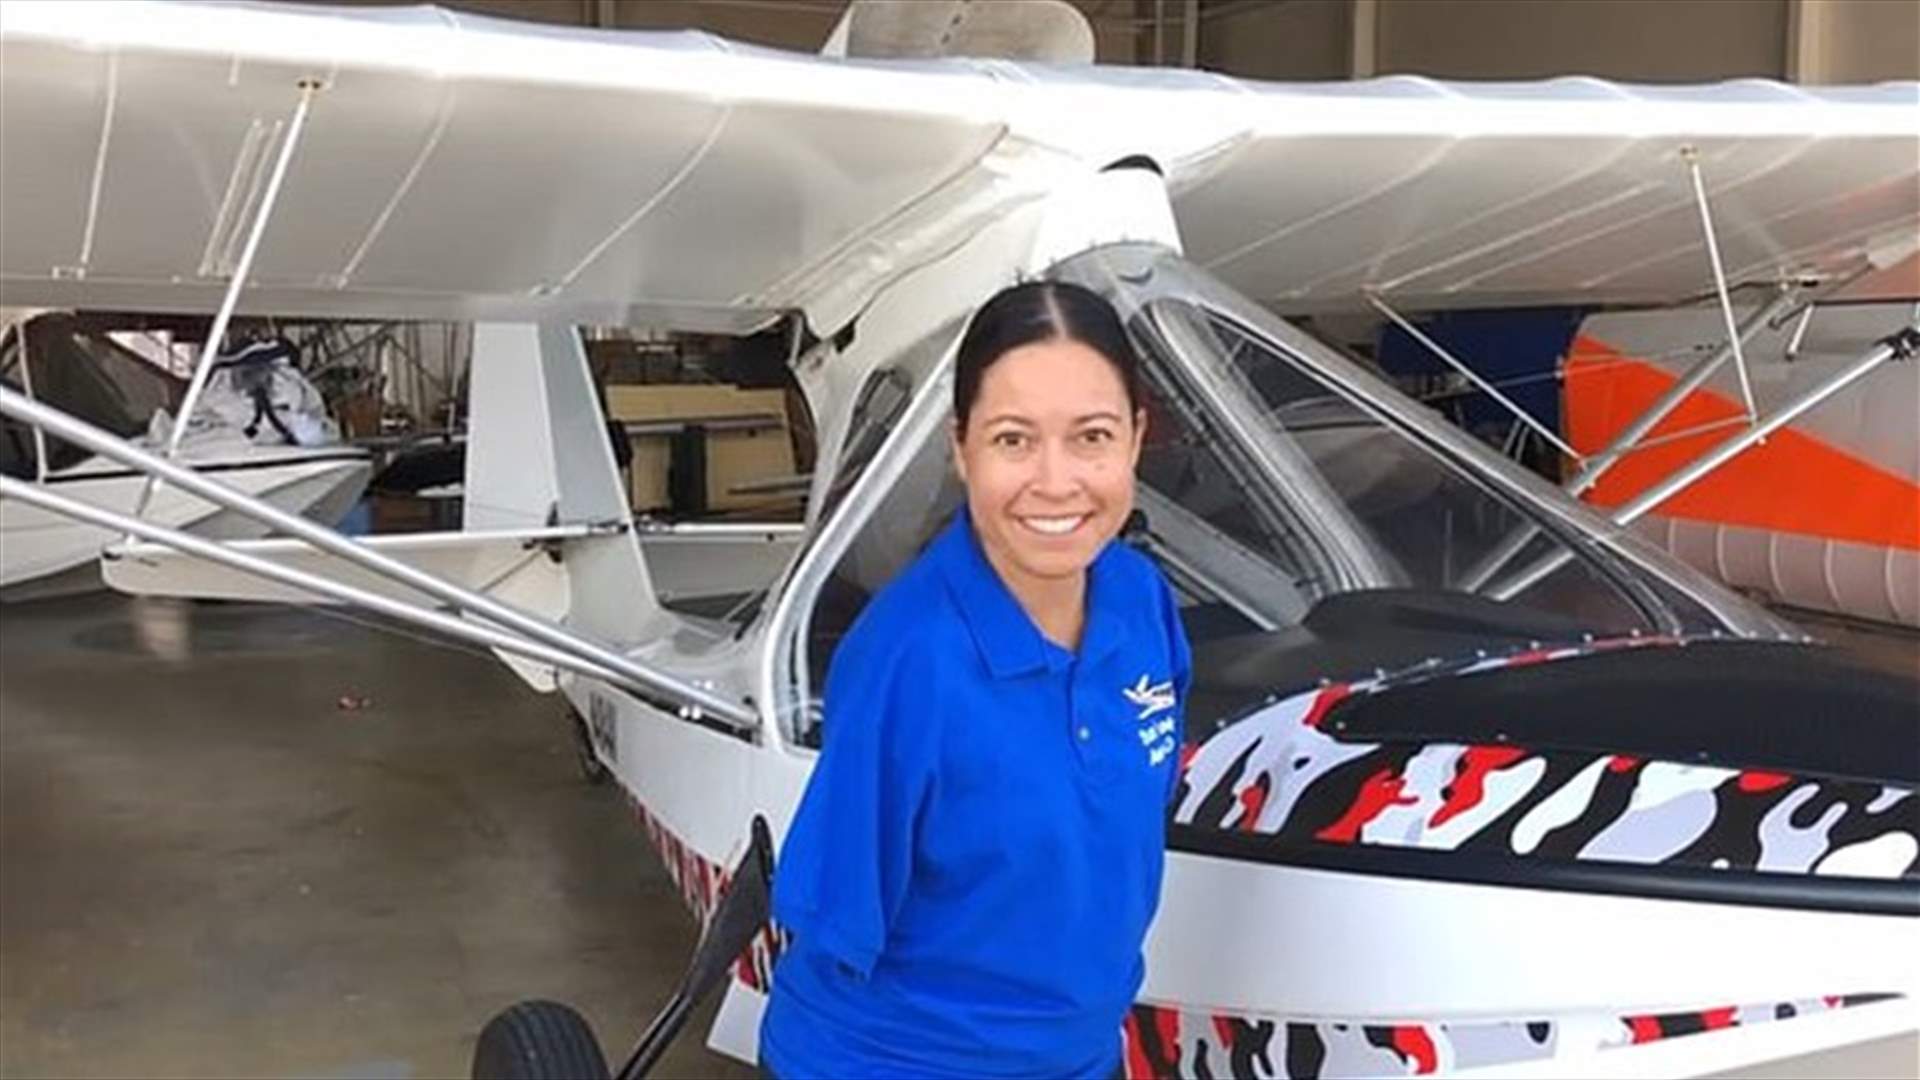 للمرة الأولى في الولايات المتحدة... شابة تقود الطائرة بدون ذراعين! (فيديو)